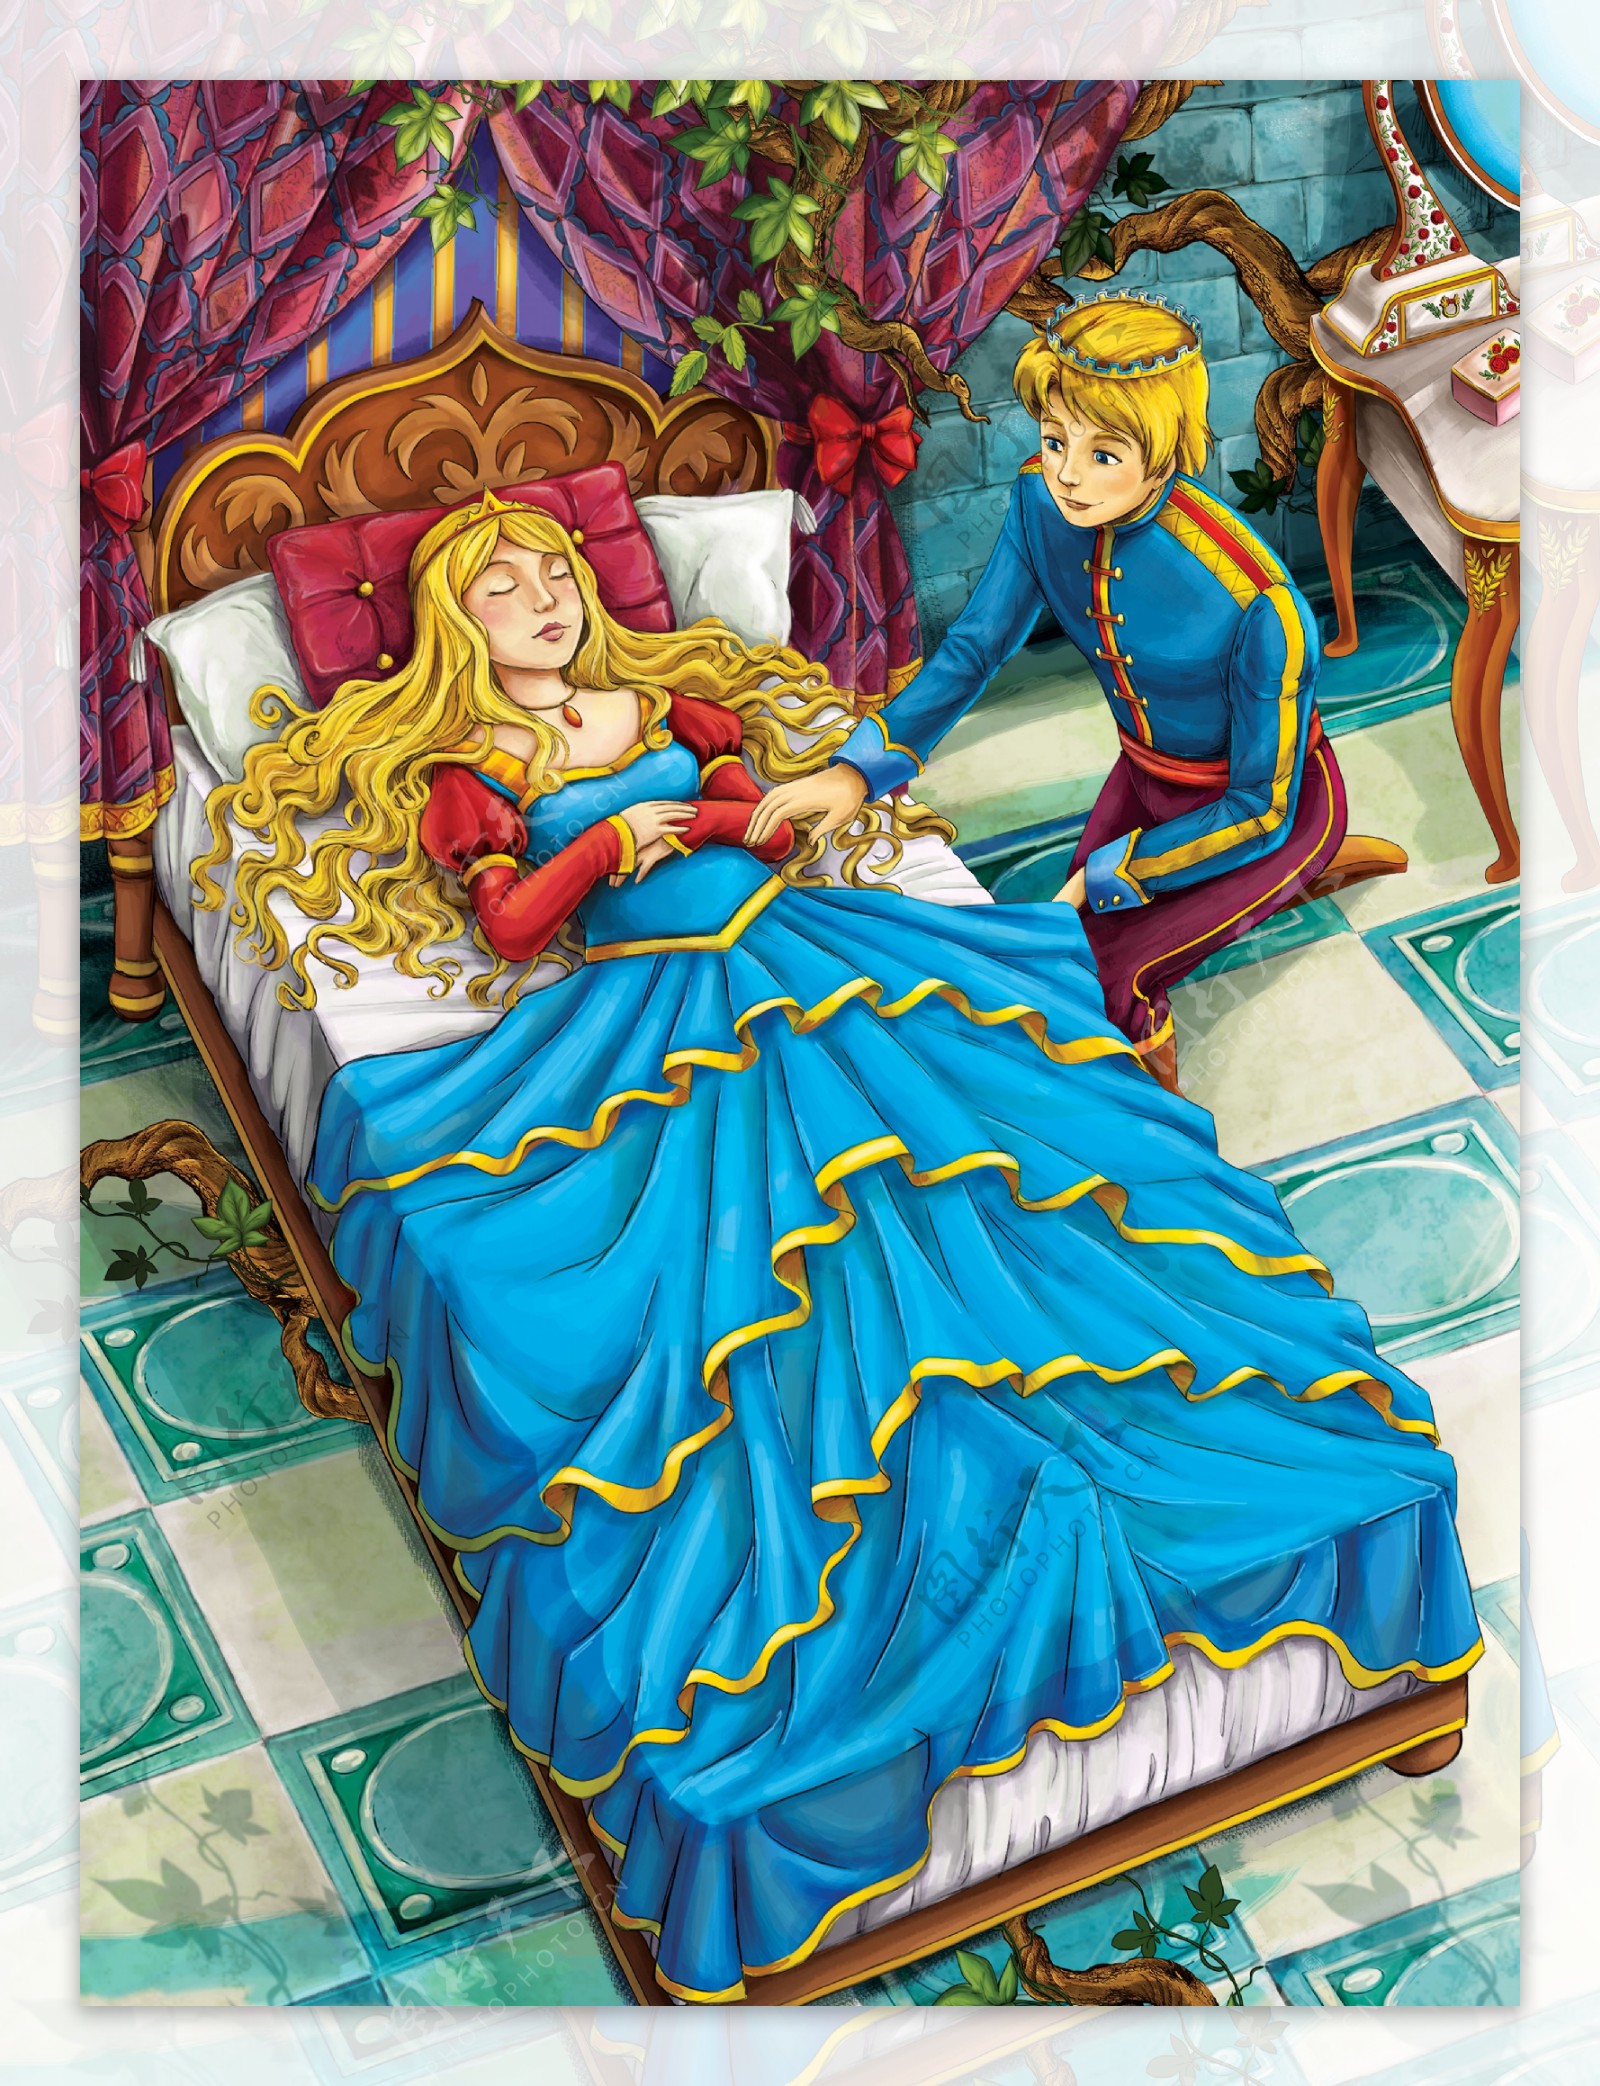 卡通白雪公主与王子图片